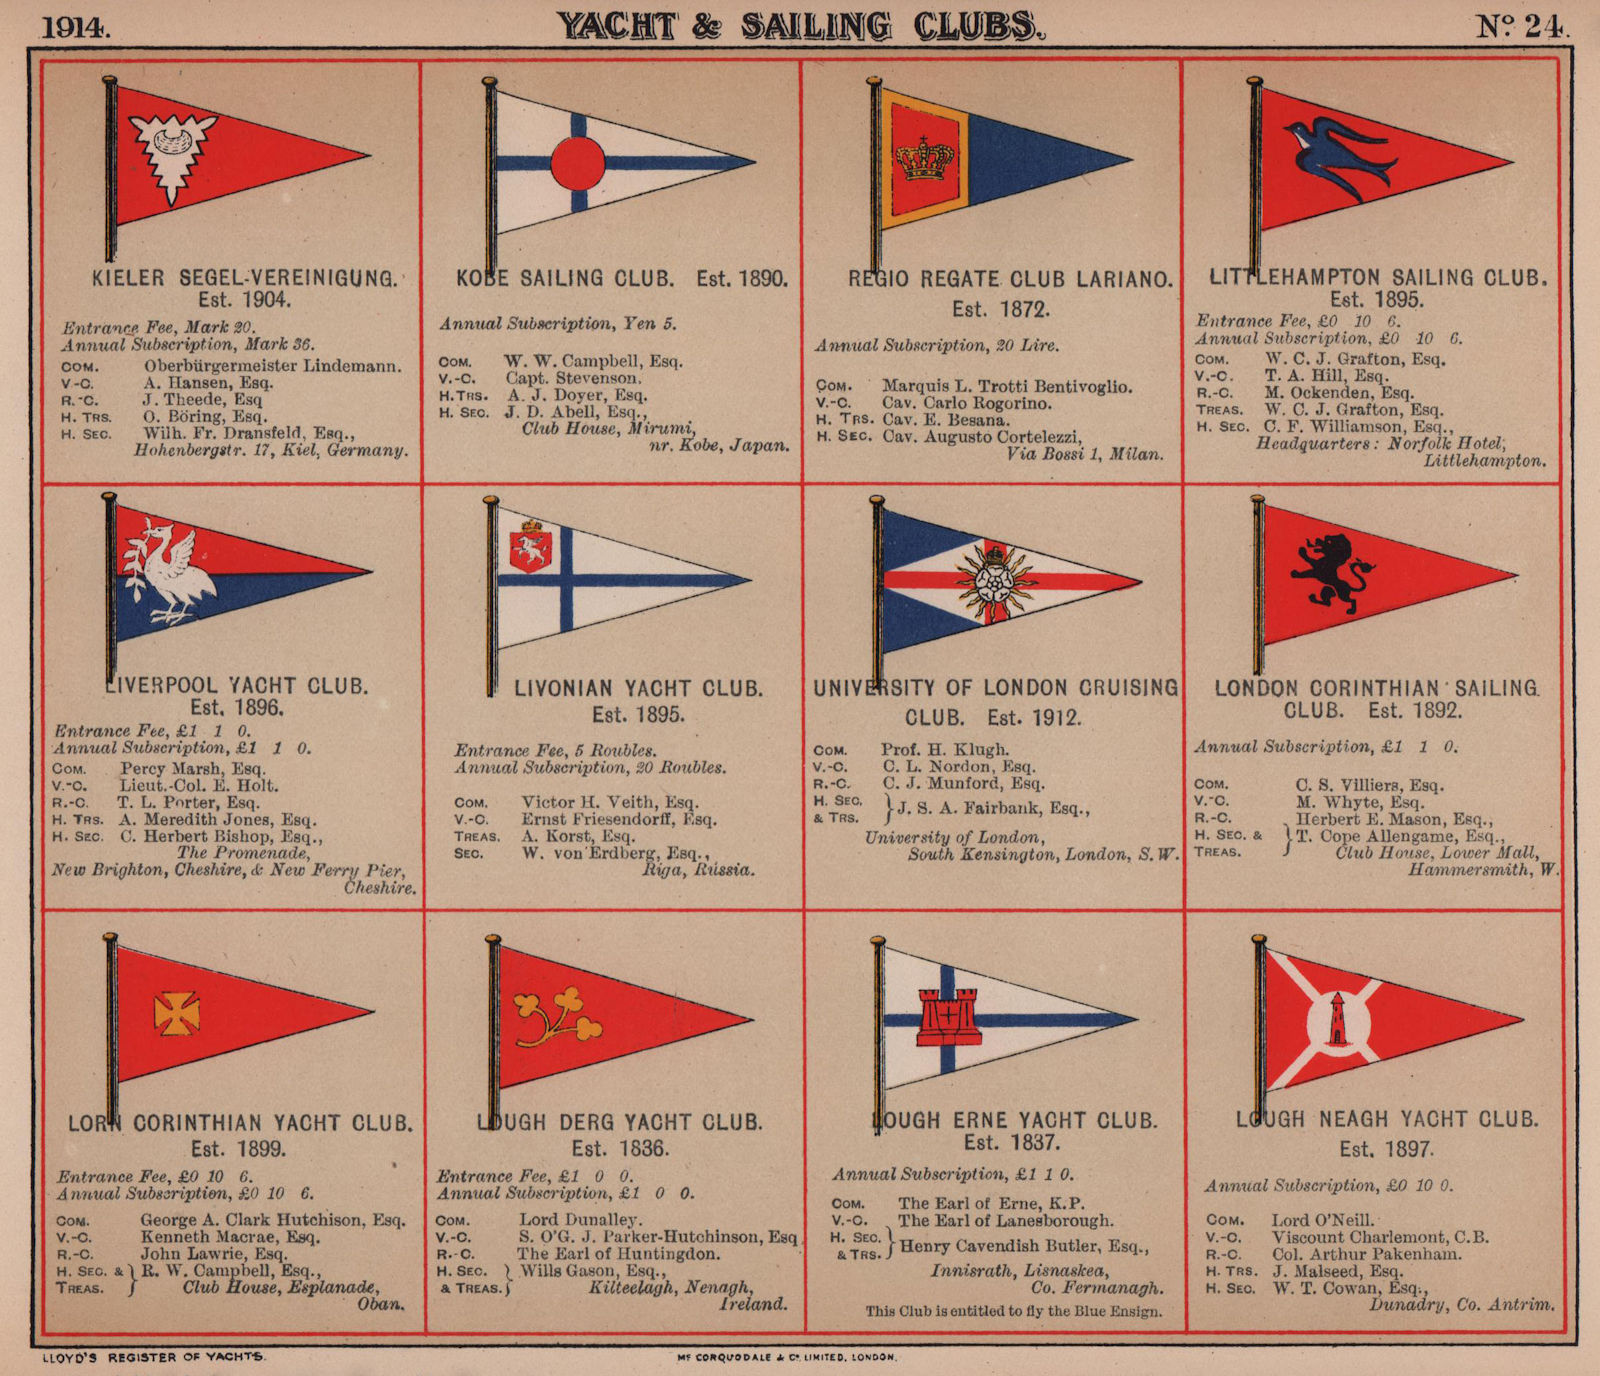 YACHT & SAILING CLUB FLAGS K-L Kiel Kobe Littlehampton Liverpool Livonian 1914